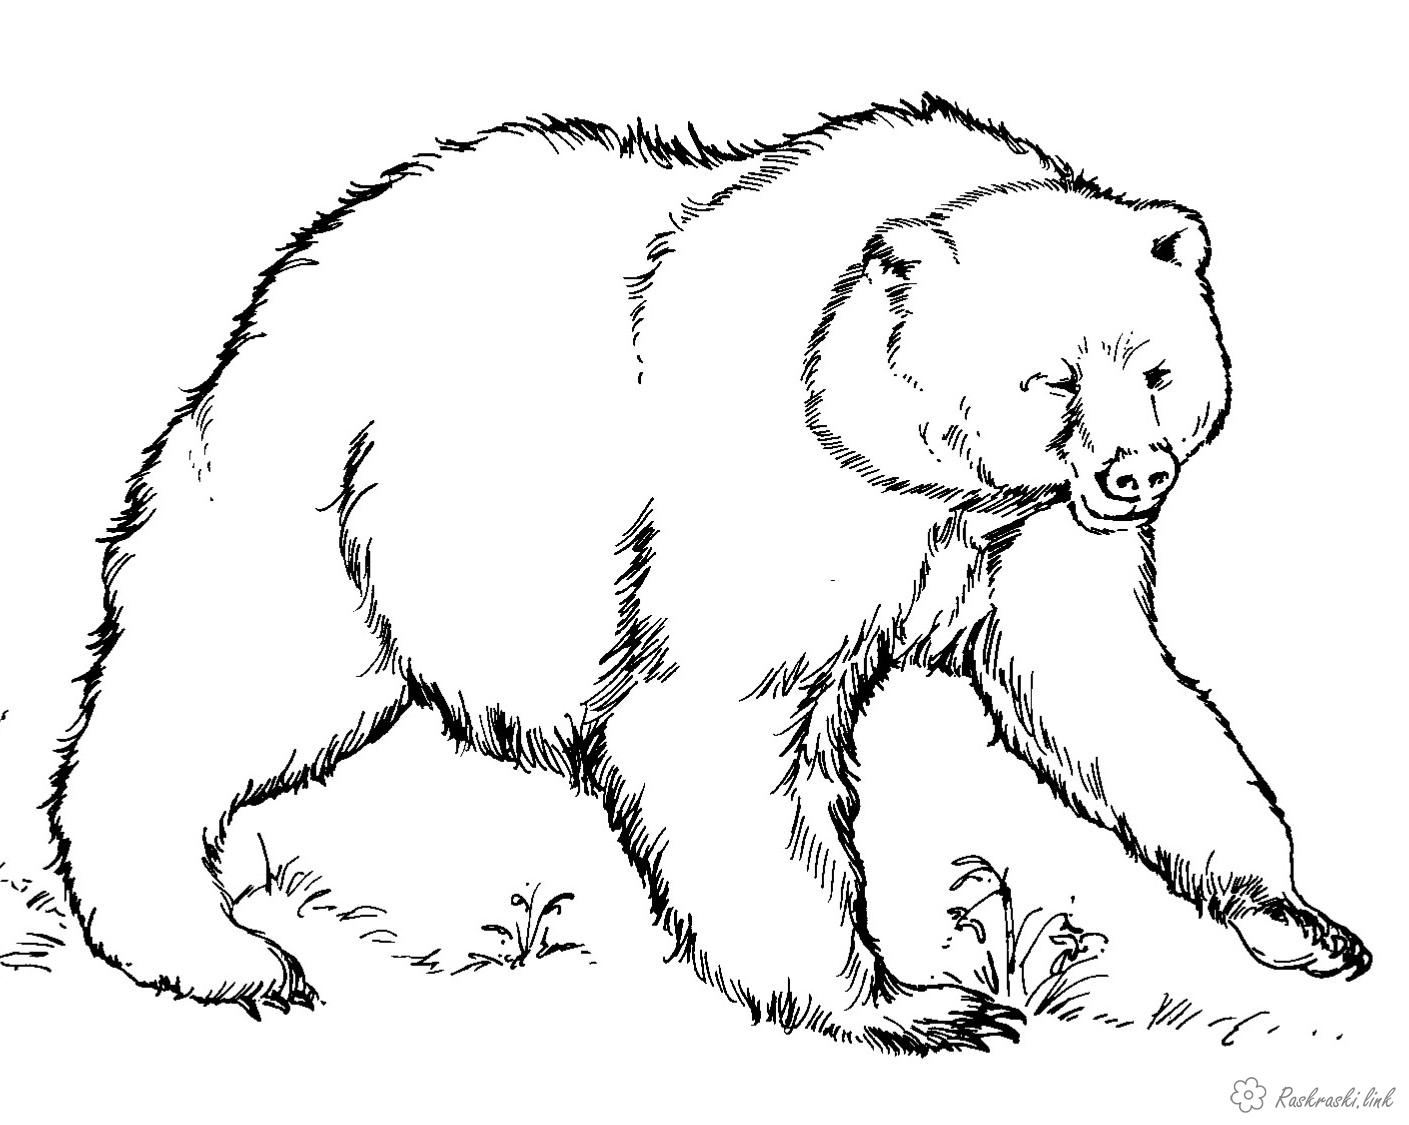 Розмальовки лісові ведмідь